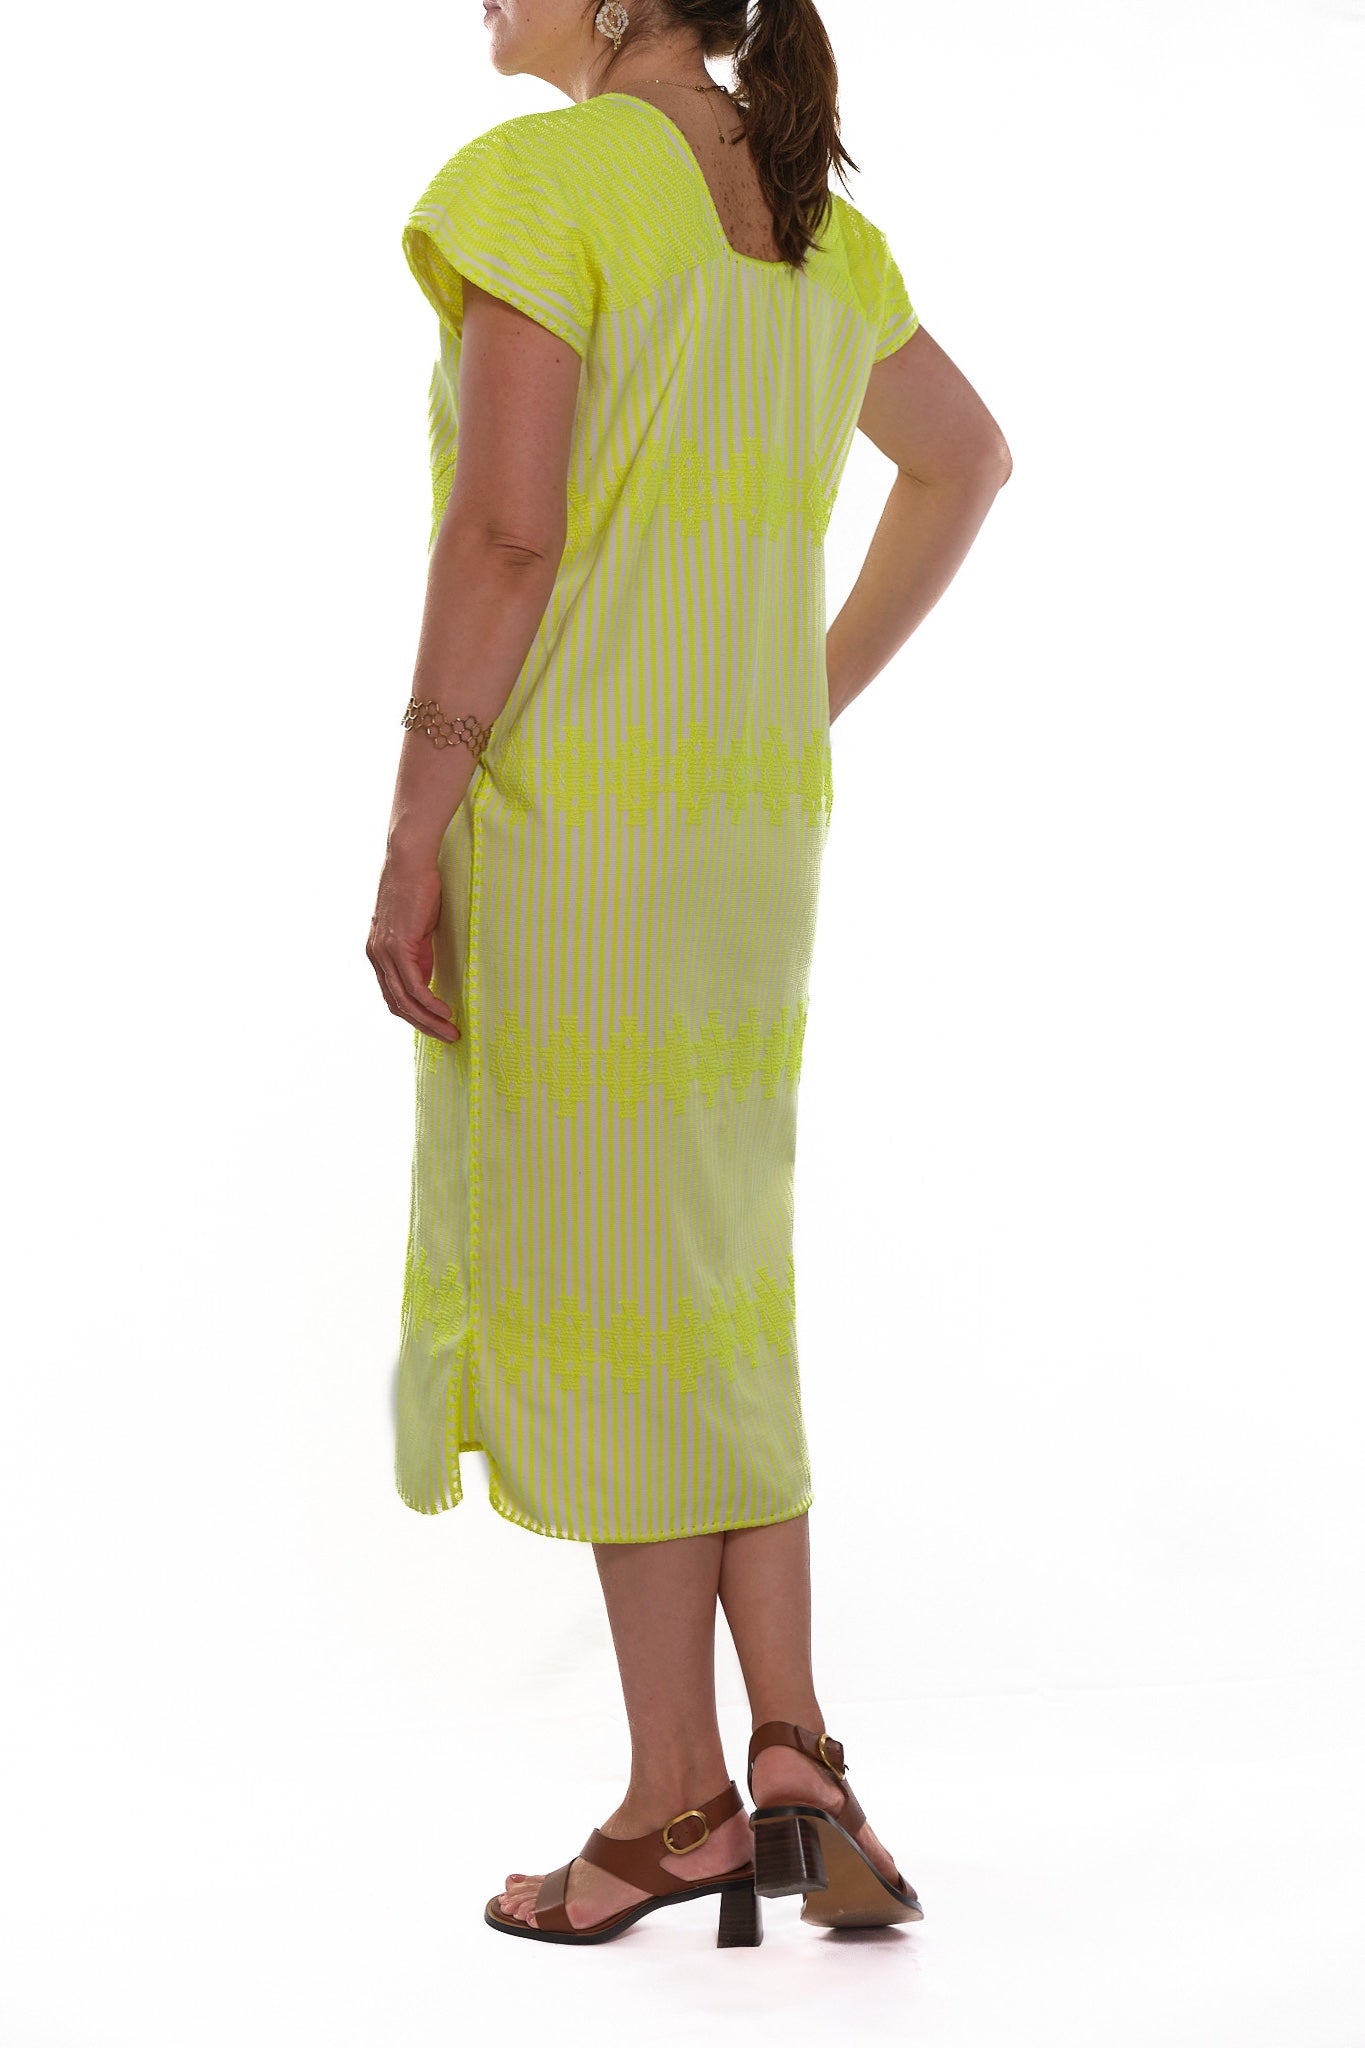 Huipil Dress San Juan yellow neon striped